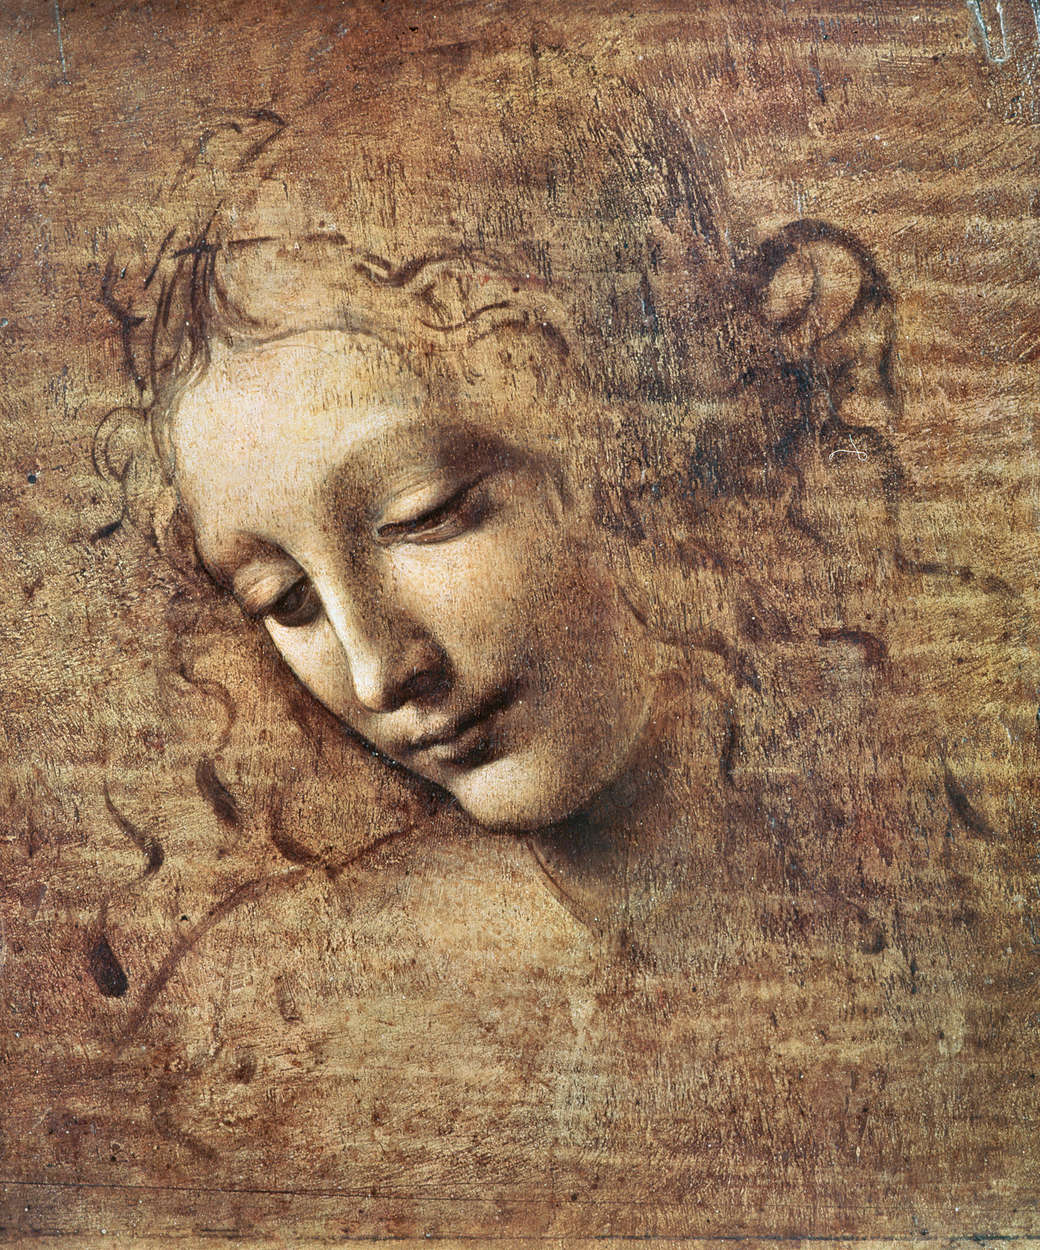             Fotomurali "Testa di giovane donna con capelli scompigliati" di Leonardo da Vinci
        